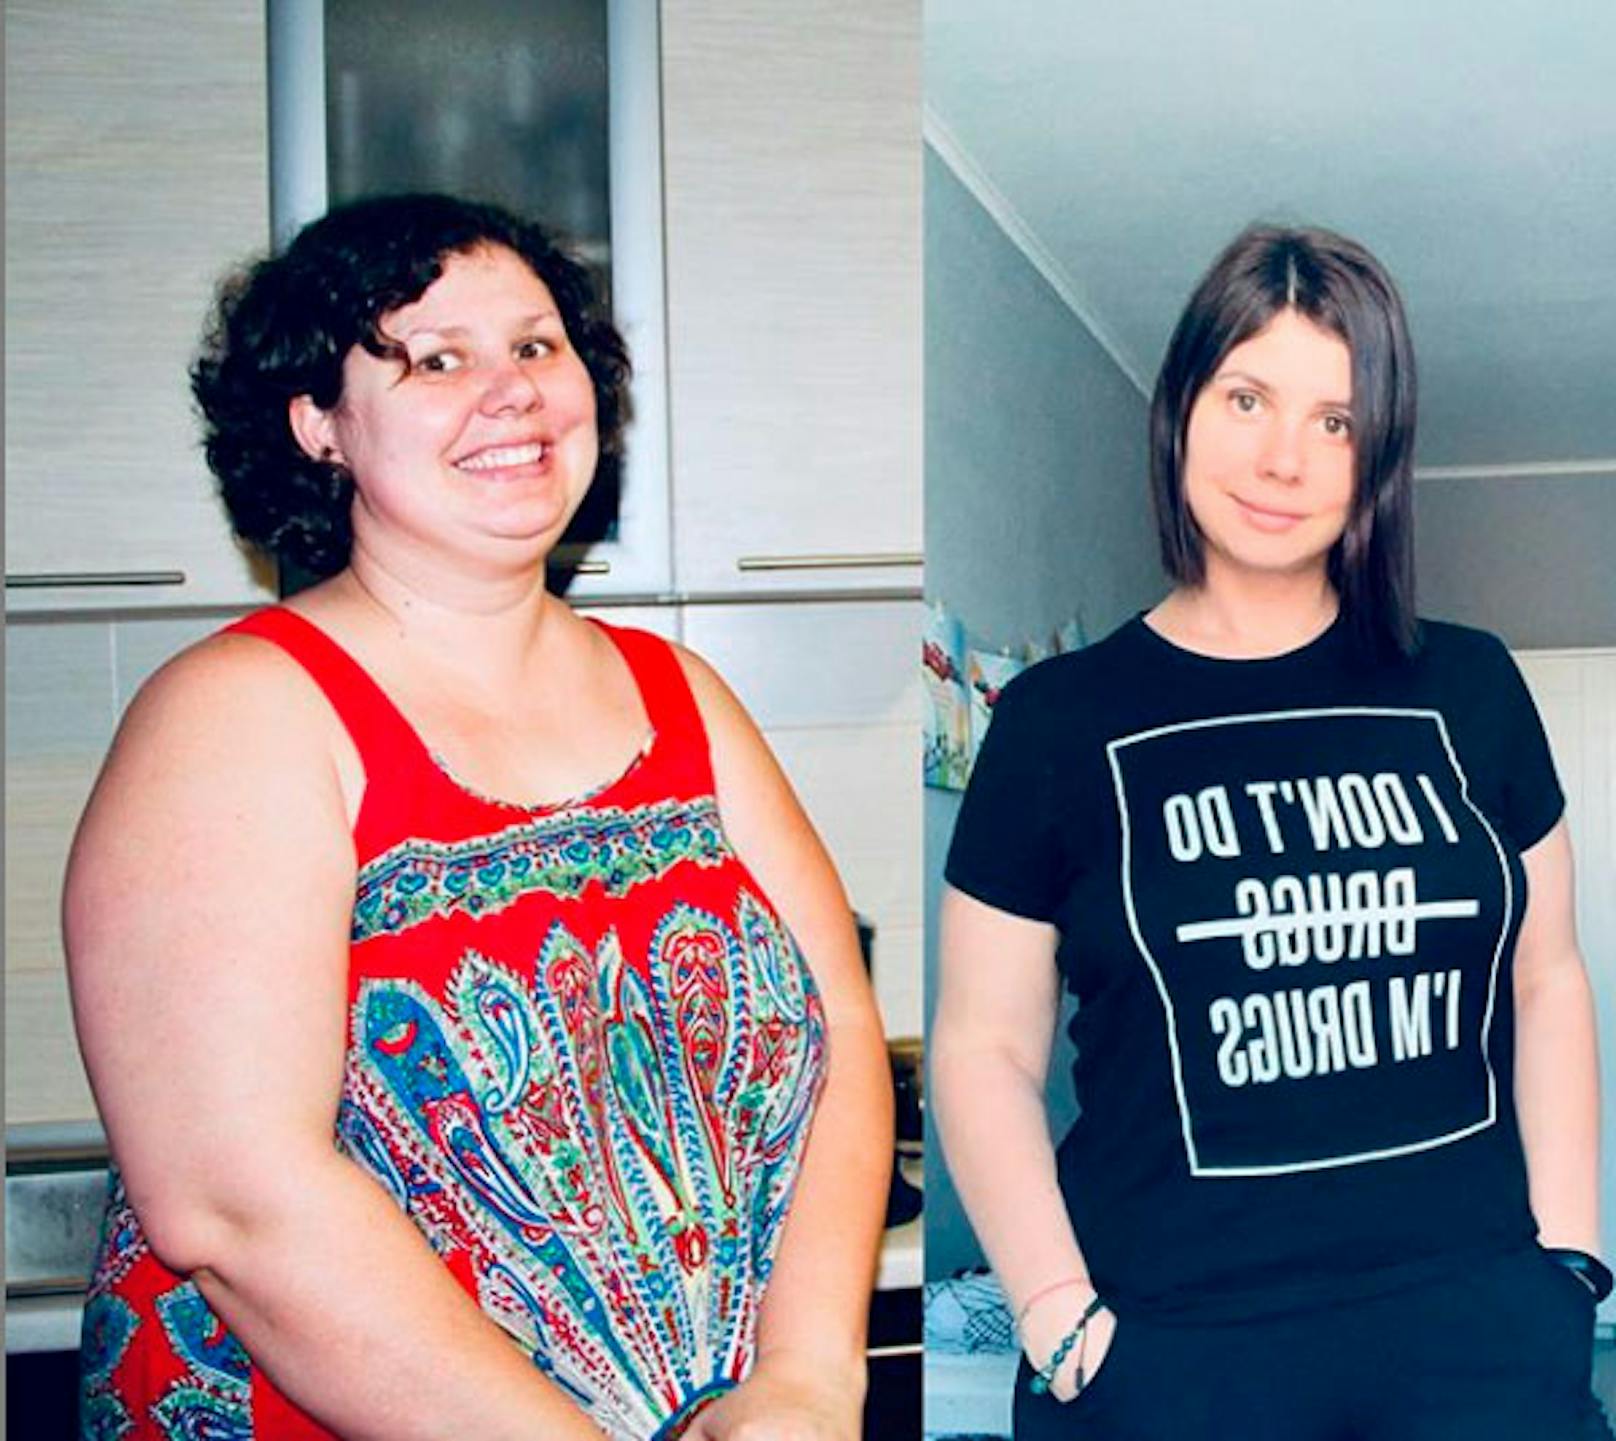 Die russische Influencerin Marina Balmasheva (35) verblüfft ihre mehr als 418.000 Follower mit Throwback-Fotos, die ihre Verwandlung zeigen. In ihren 20ern war sie übergewichtig, inzwischen hat sie stark abgenommen und wirkt mit 35 jünger als damals.